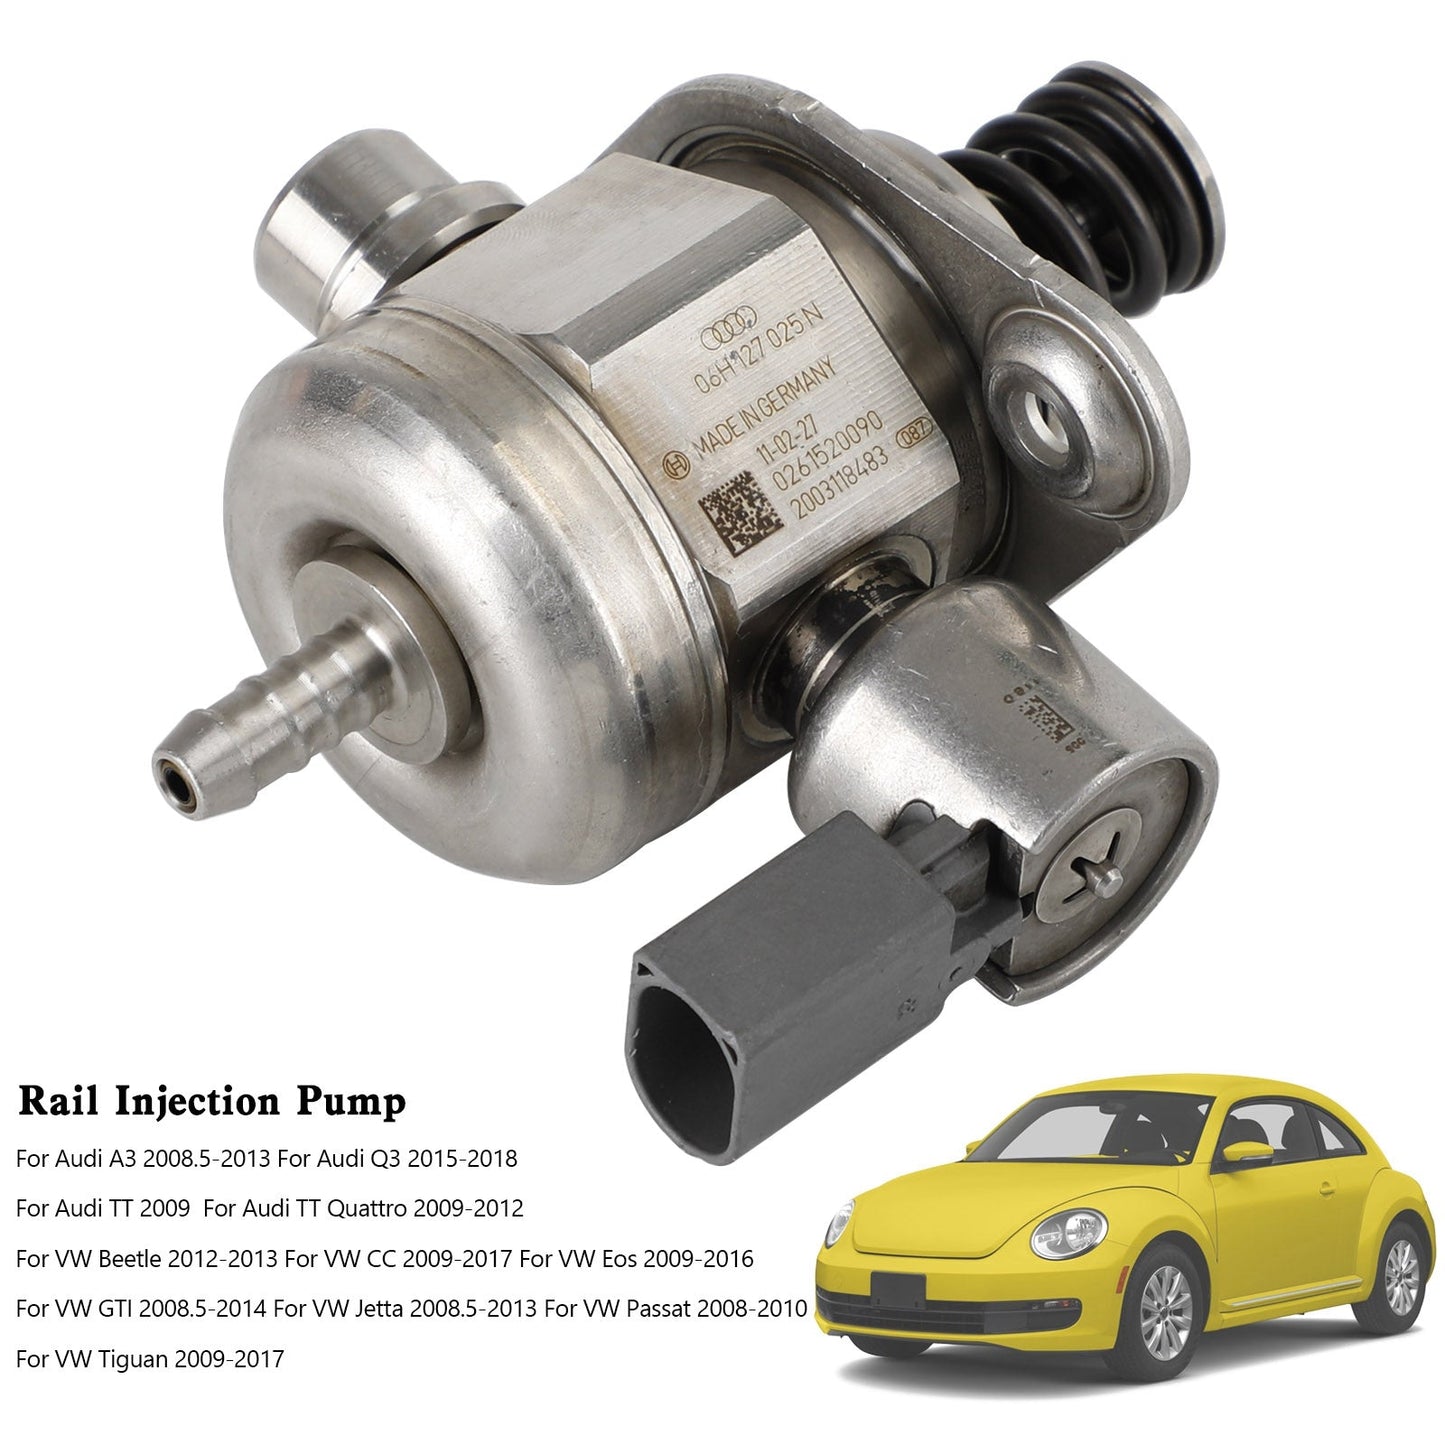 VW GTI 2008.5-2014 / VW Passat 2008-2010 High Pressure Fuel Pump 06H127025N